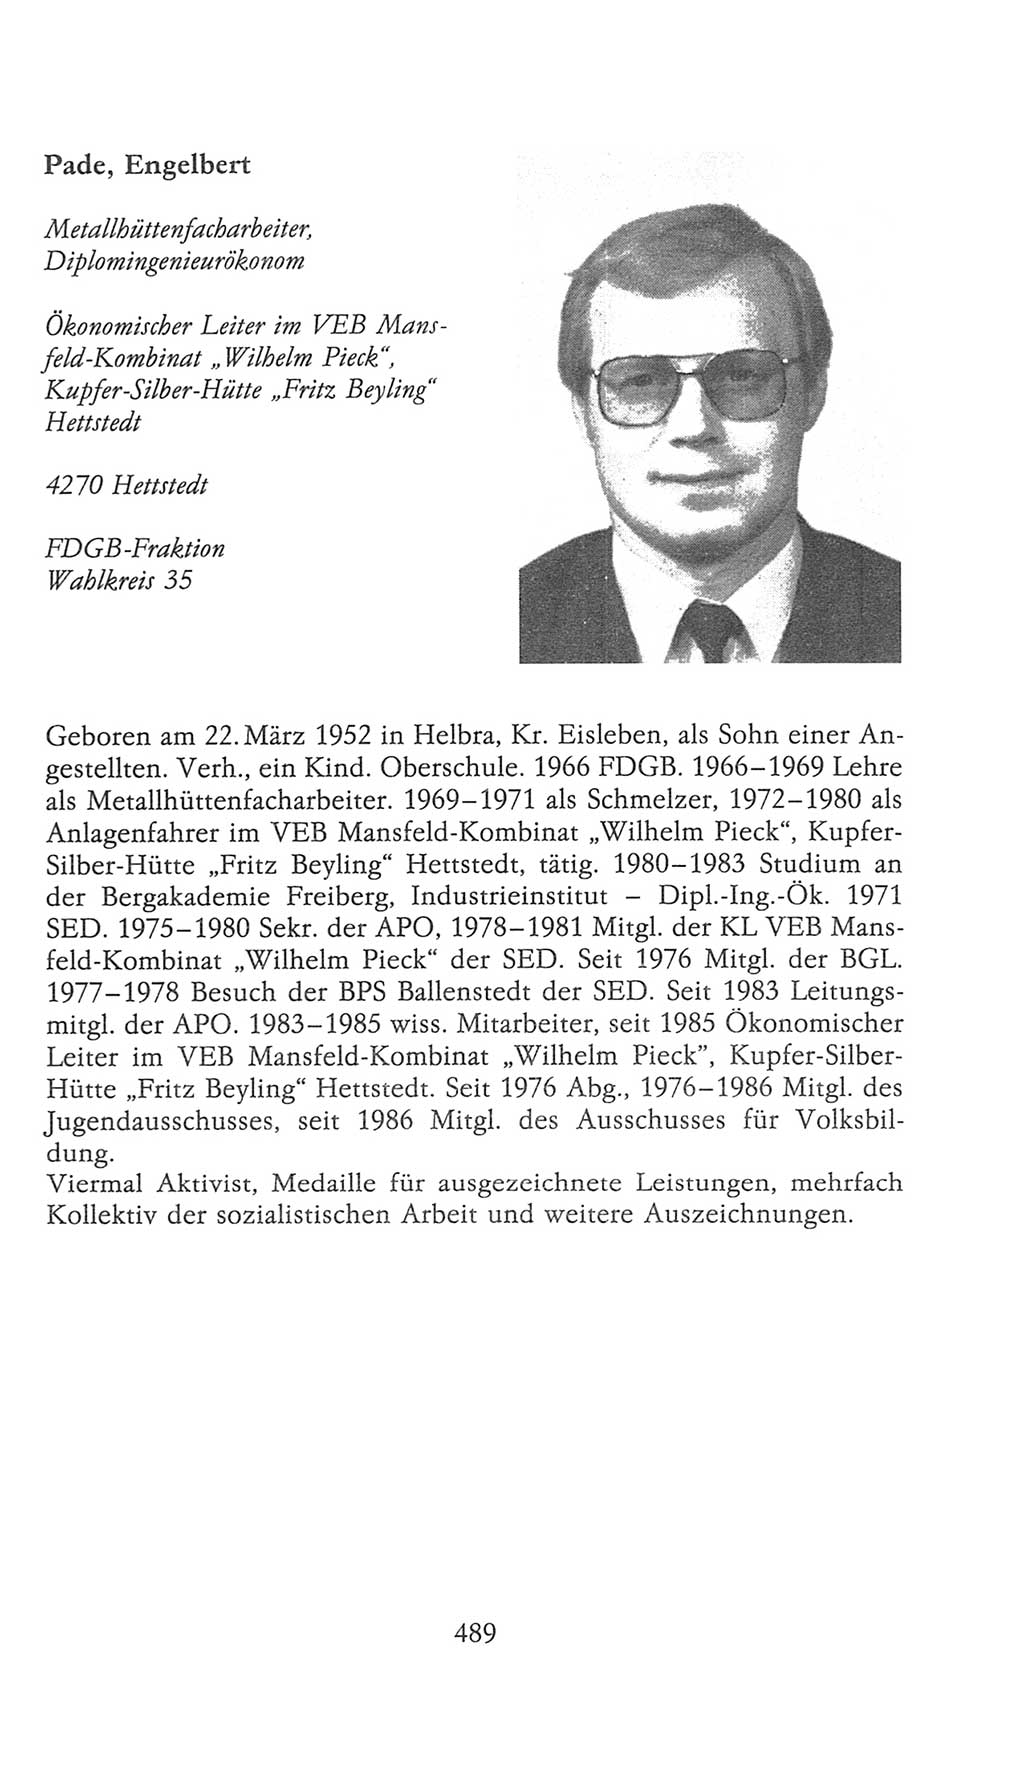 Volkskammer (VK) der Deutschen Demokratischen Republik (DDR), 9. Wahlperiode 1986-1990, Seite 489 (VK. DDR 9. WP. 1986-1990, S. 489)